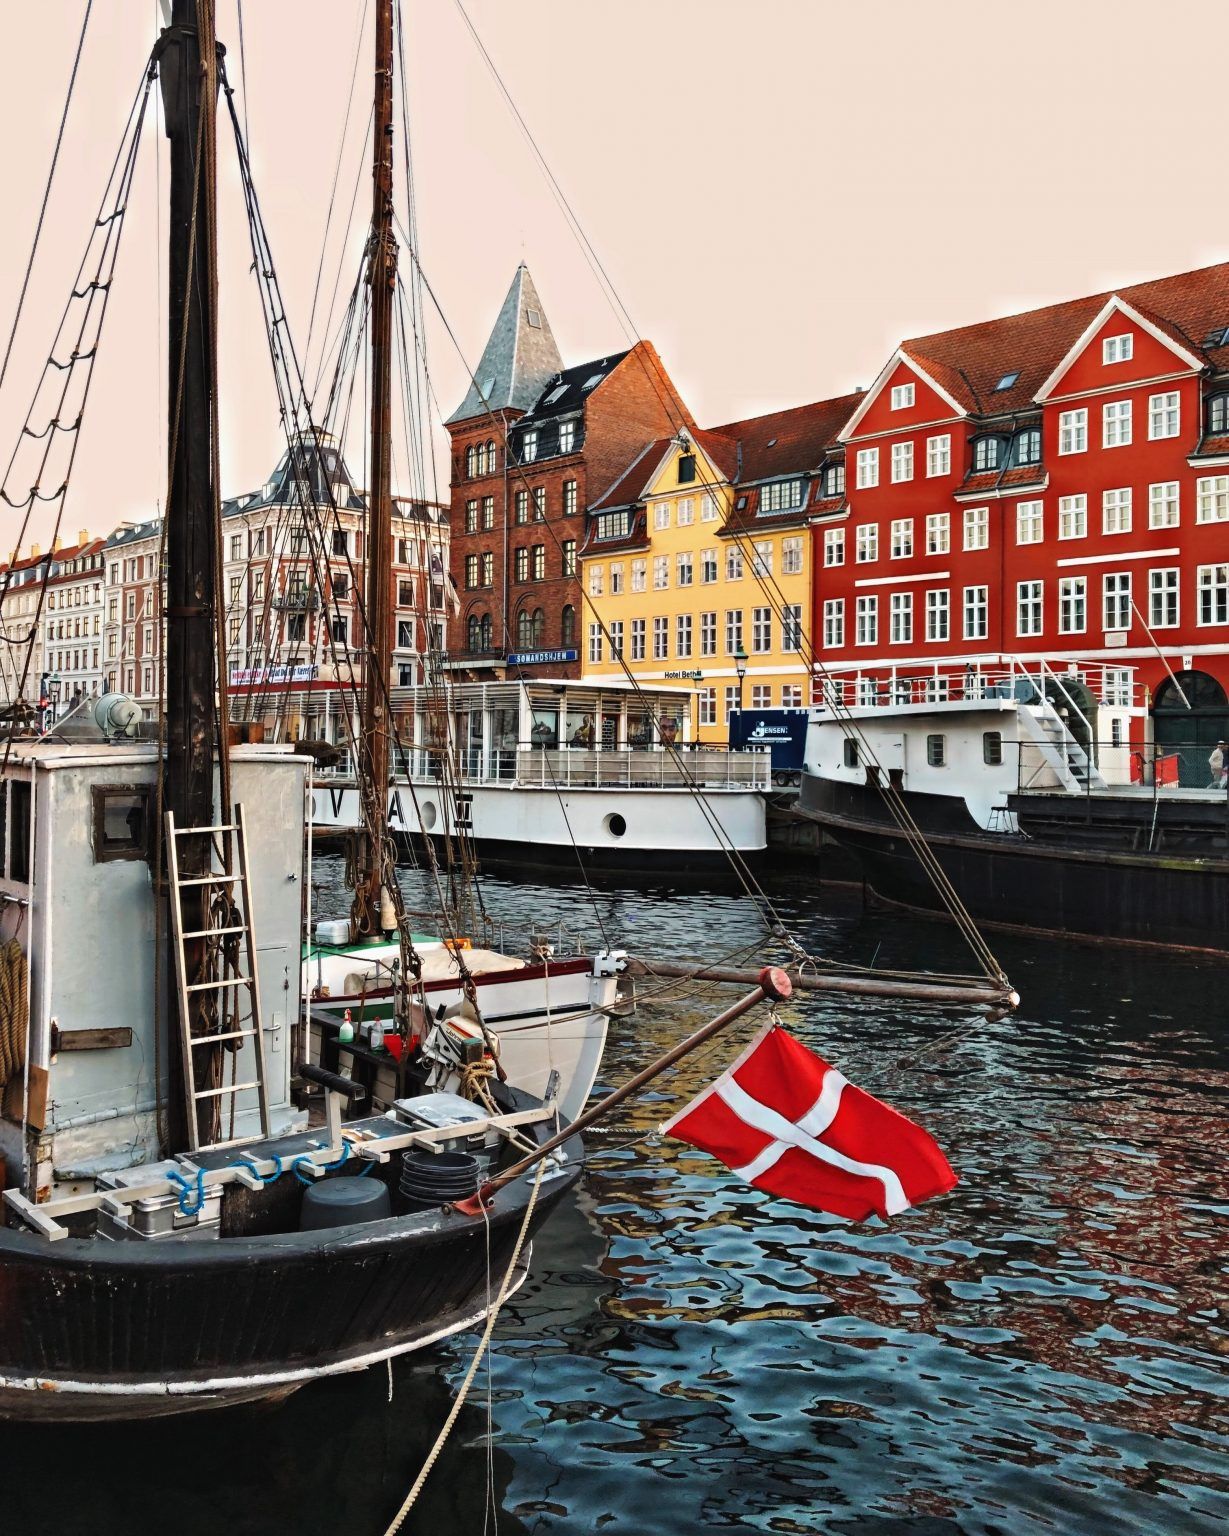 عاصمة الدنمارك معالمها وتاريخها واقتصادها |عرب الدنمارك